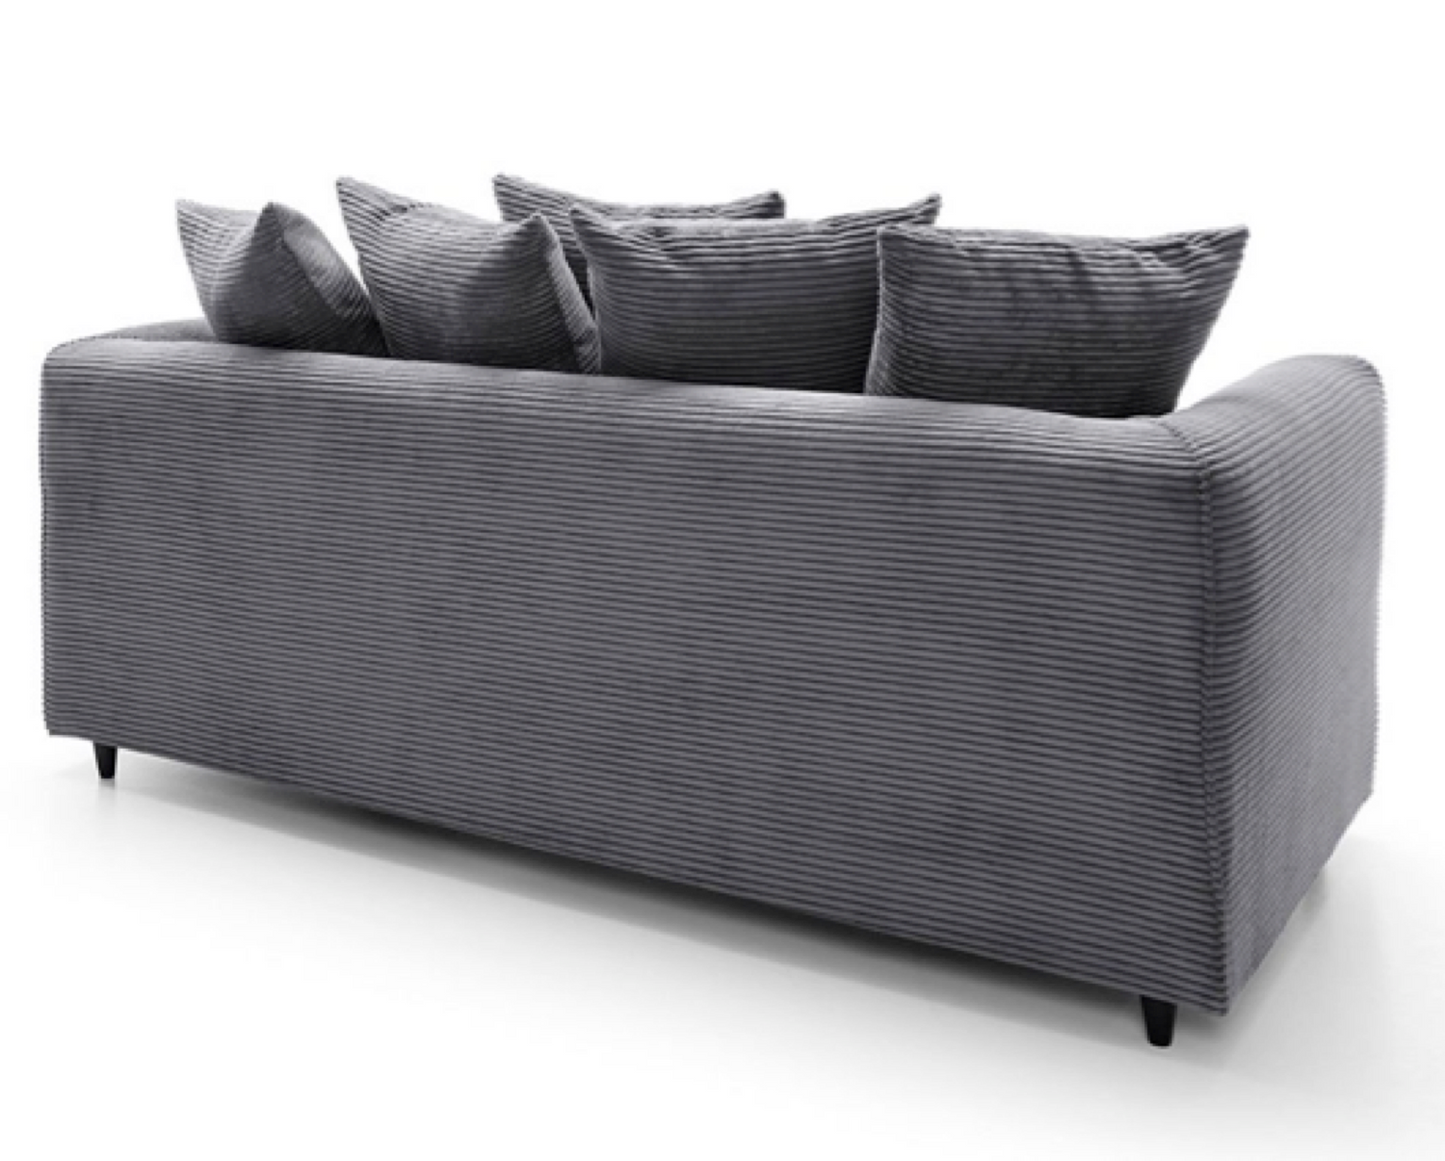 Tyler 3 Seater Sofa - Grey